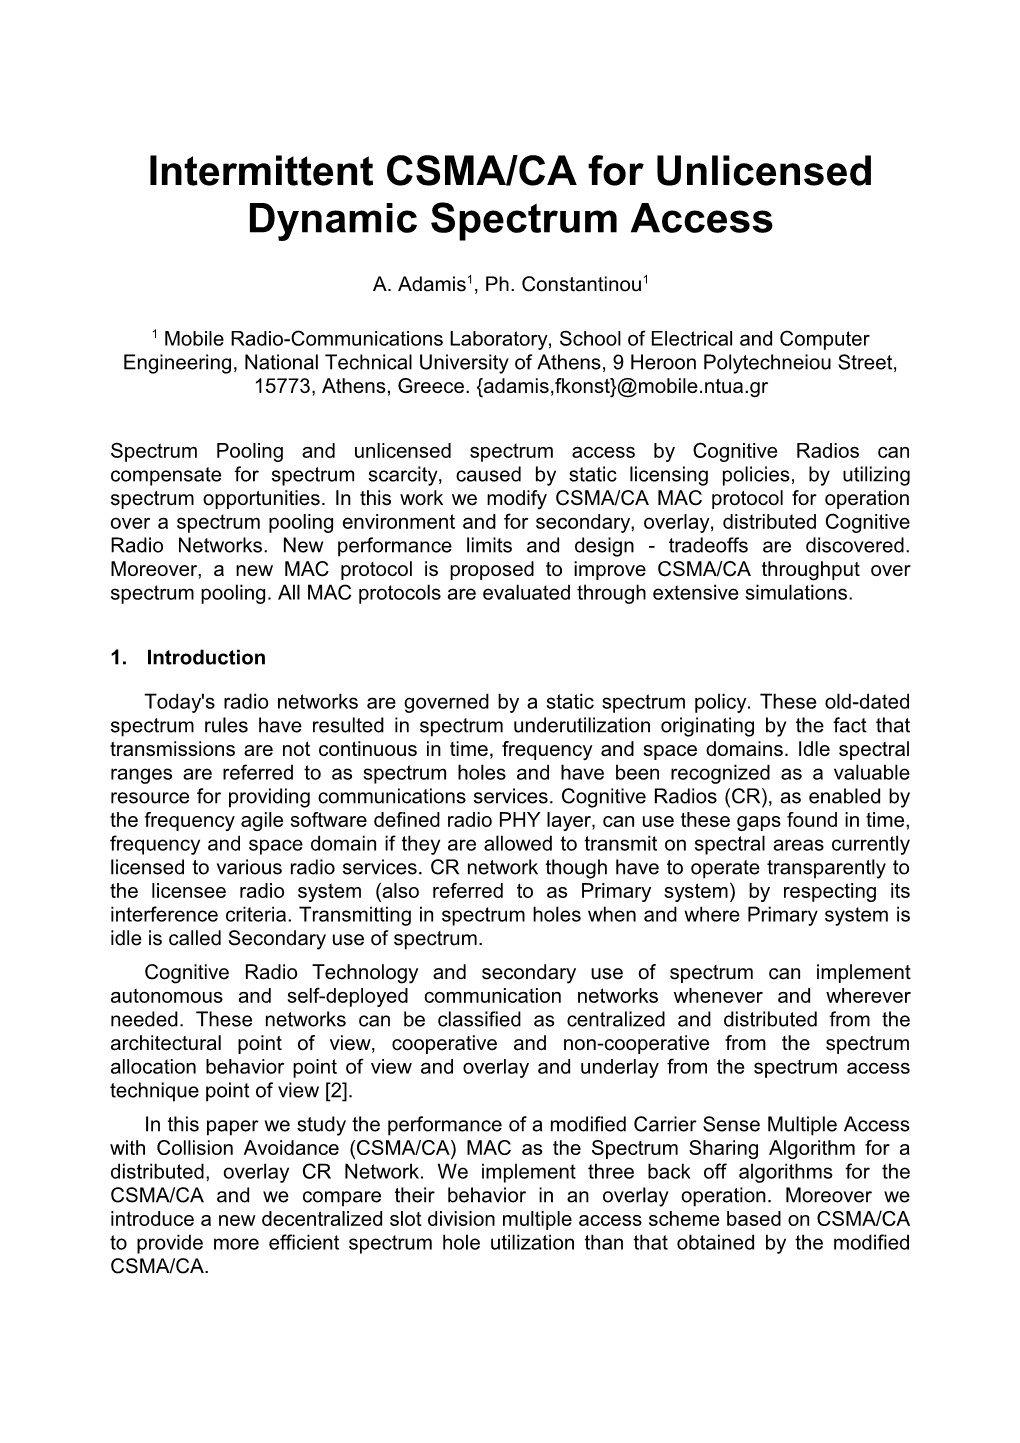 Intermittent CSMA/CA for Unlicensed Dynamic Spectrum Access